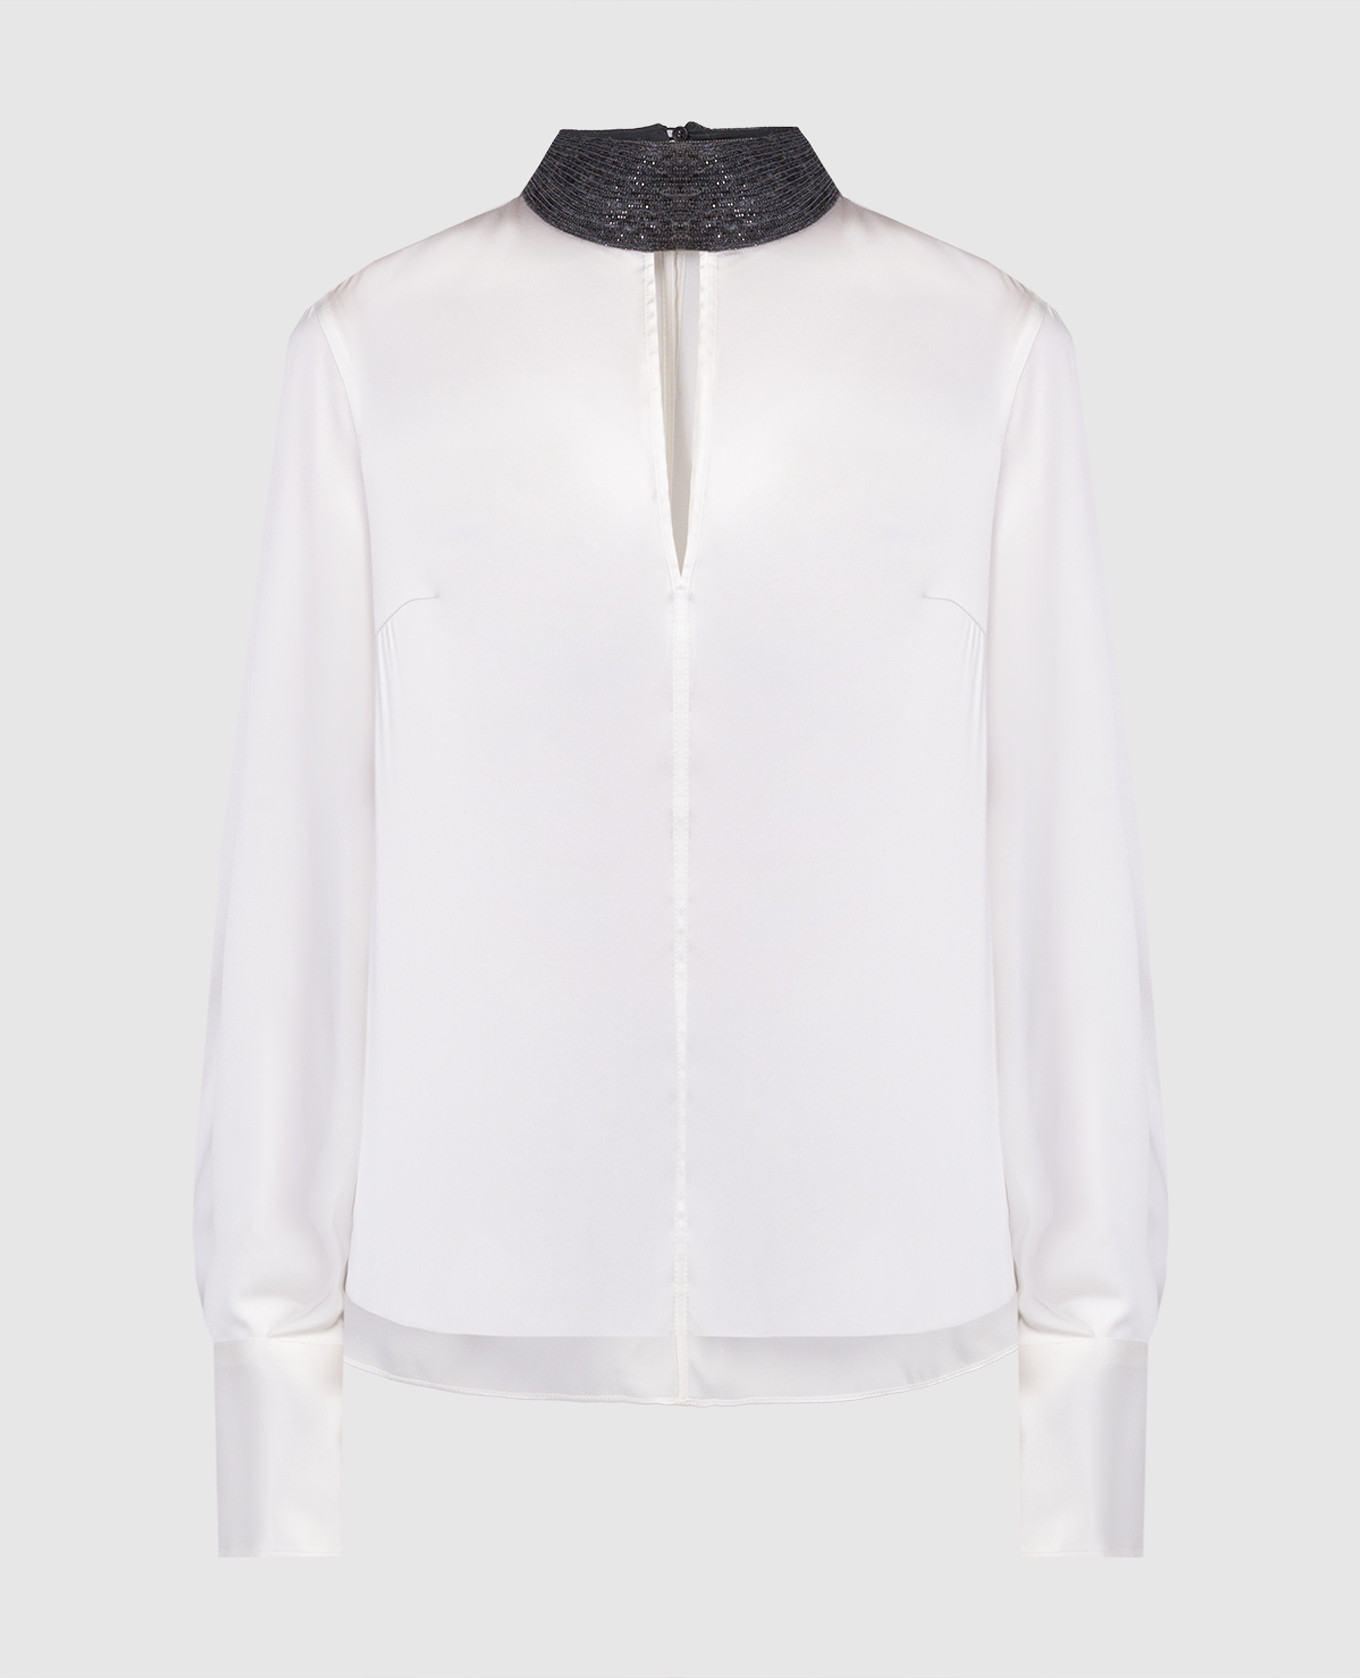 White silk blouse with monil chain